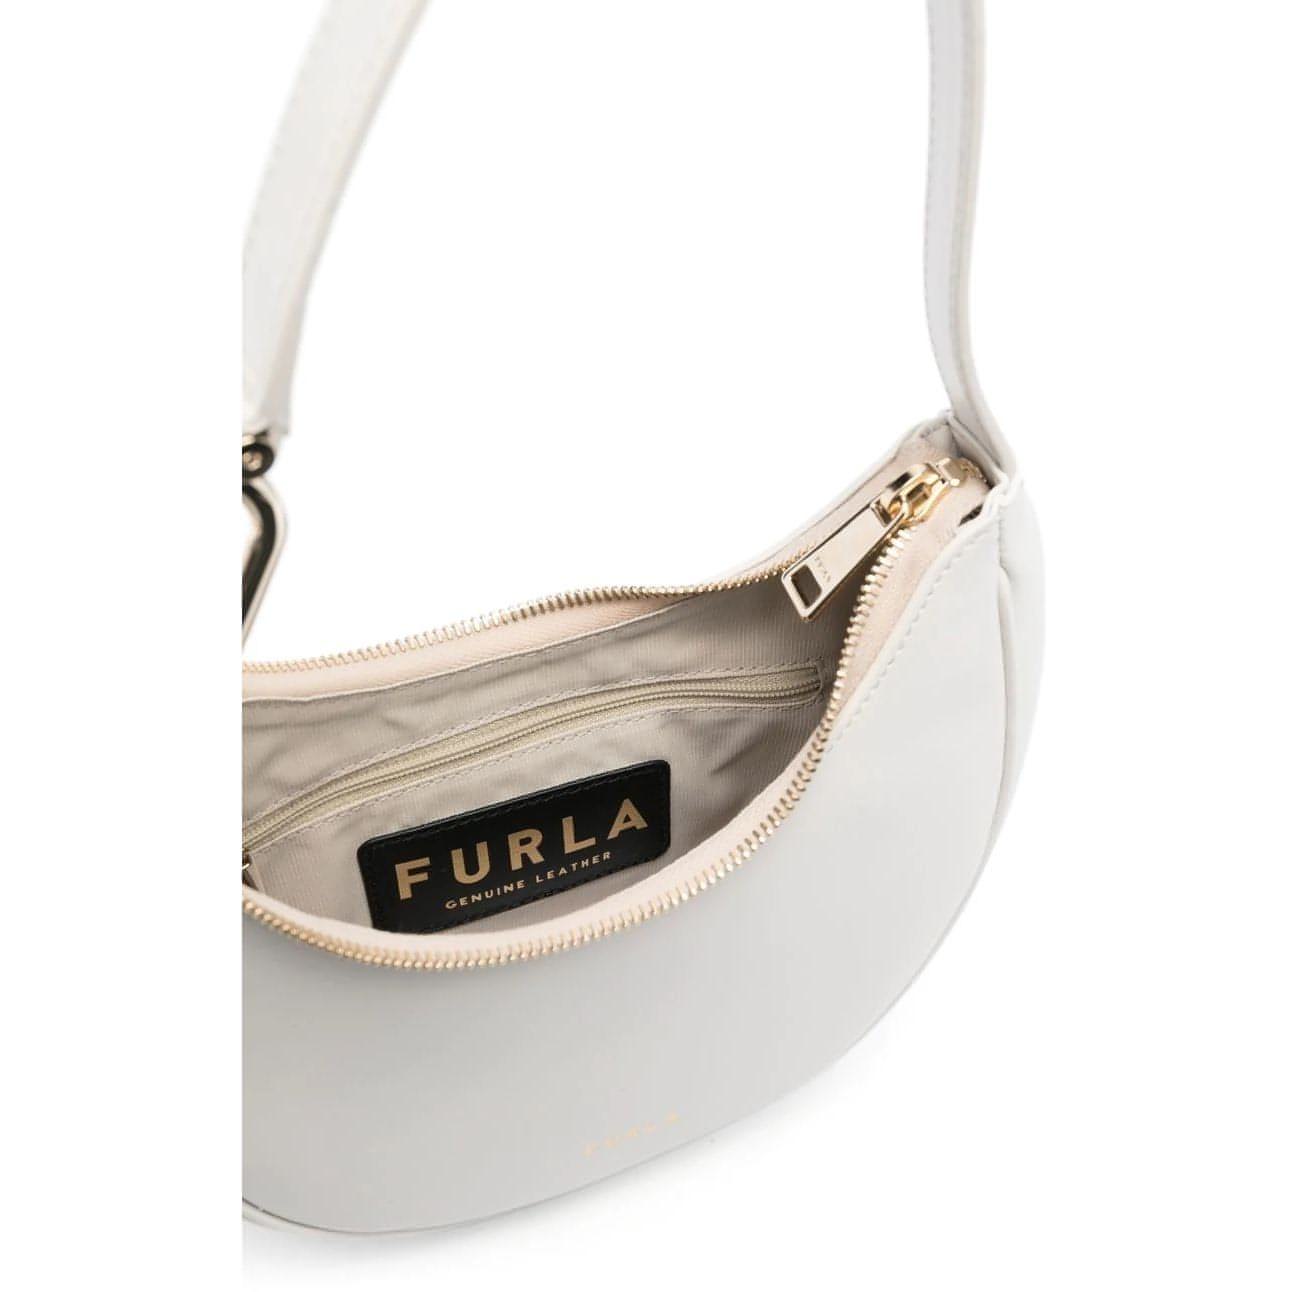 FURLA moteriška balta rankinė Furla primavera shoulder bag